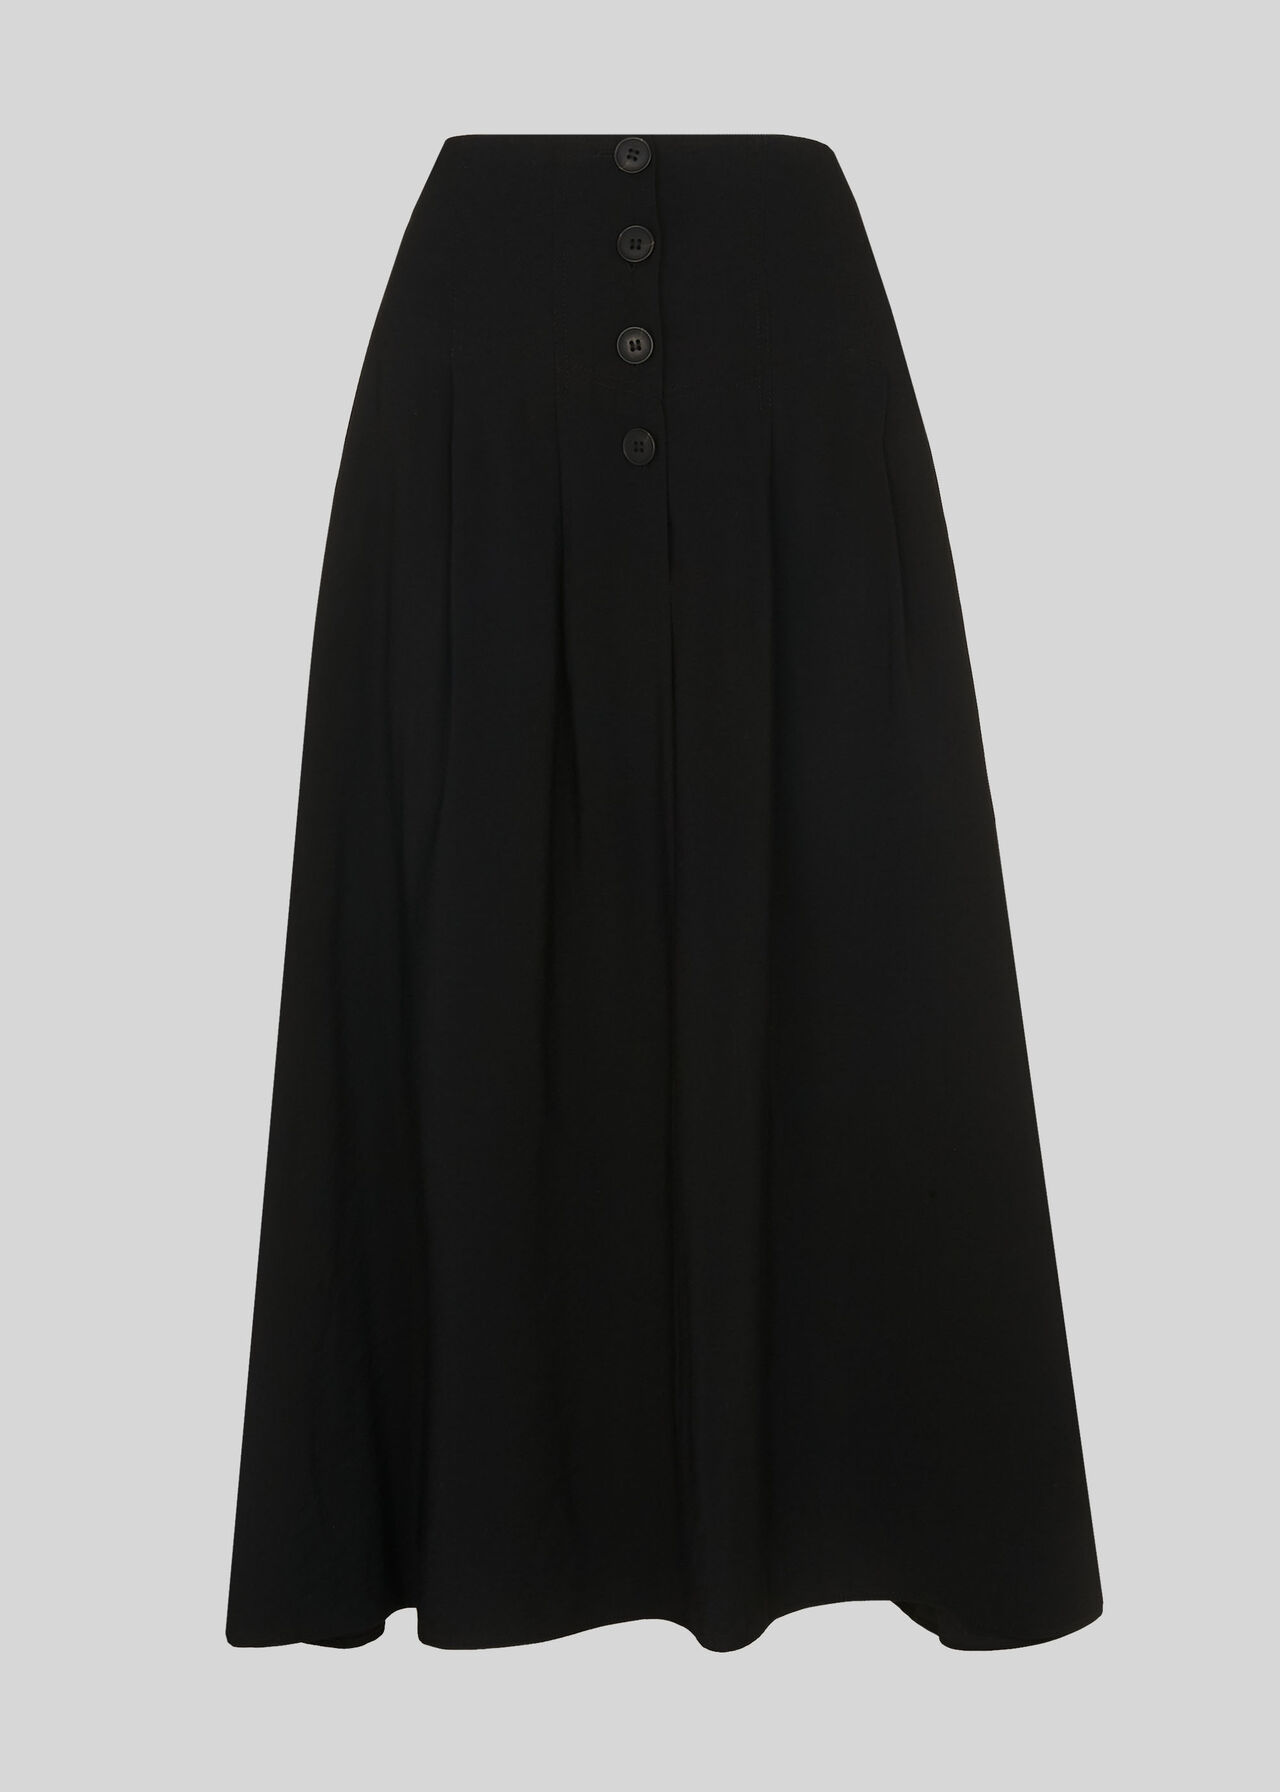 Tian Button Skirt Black